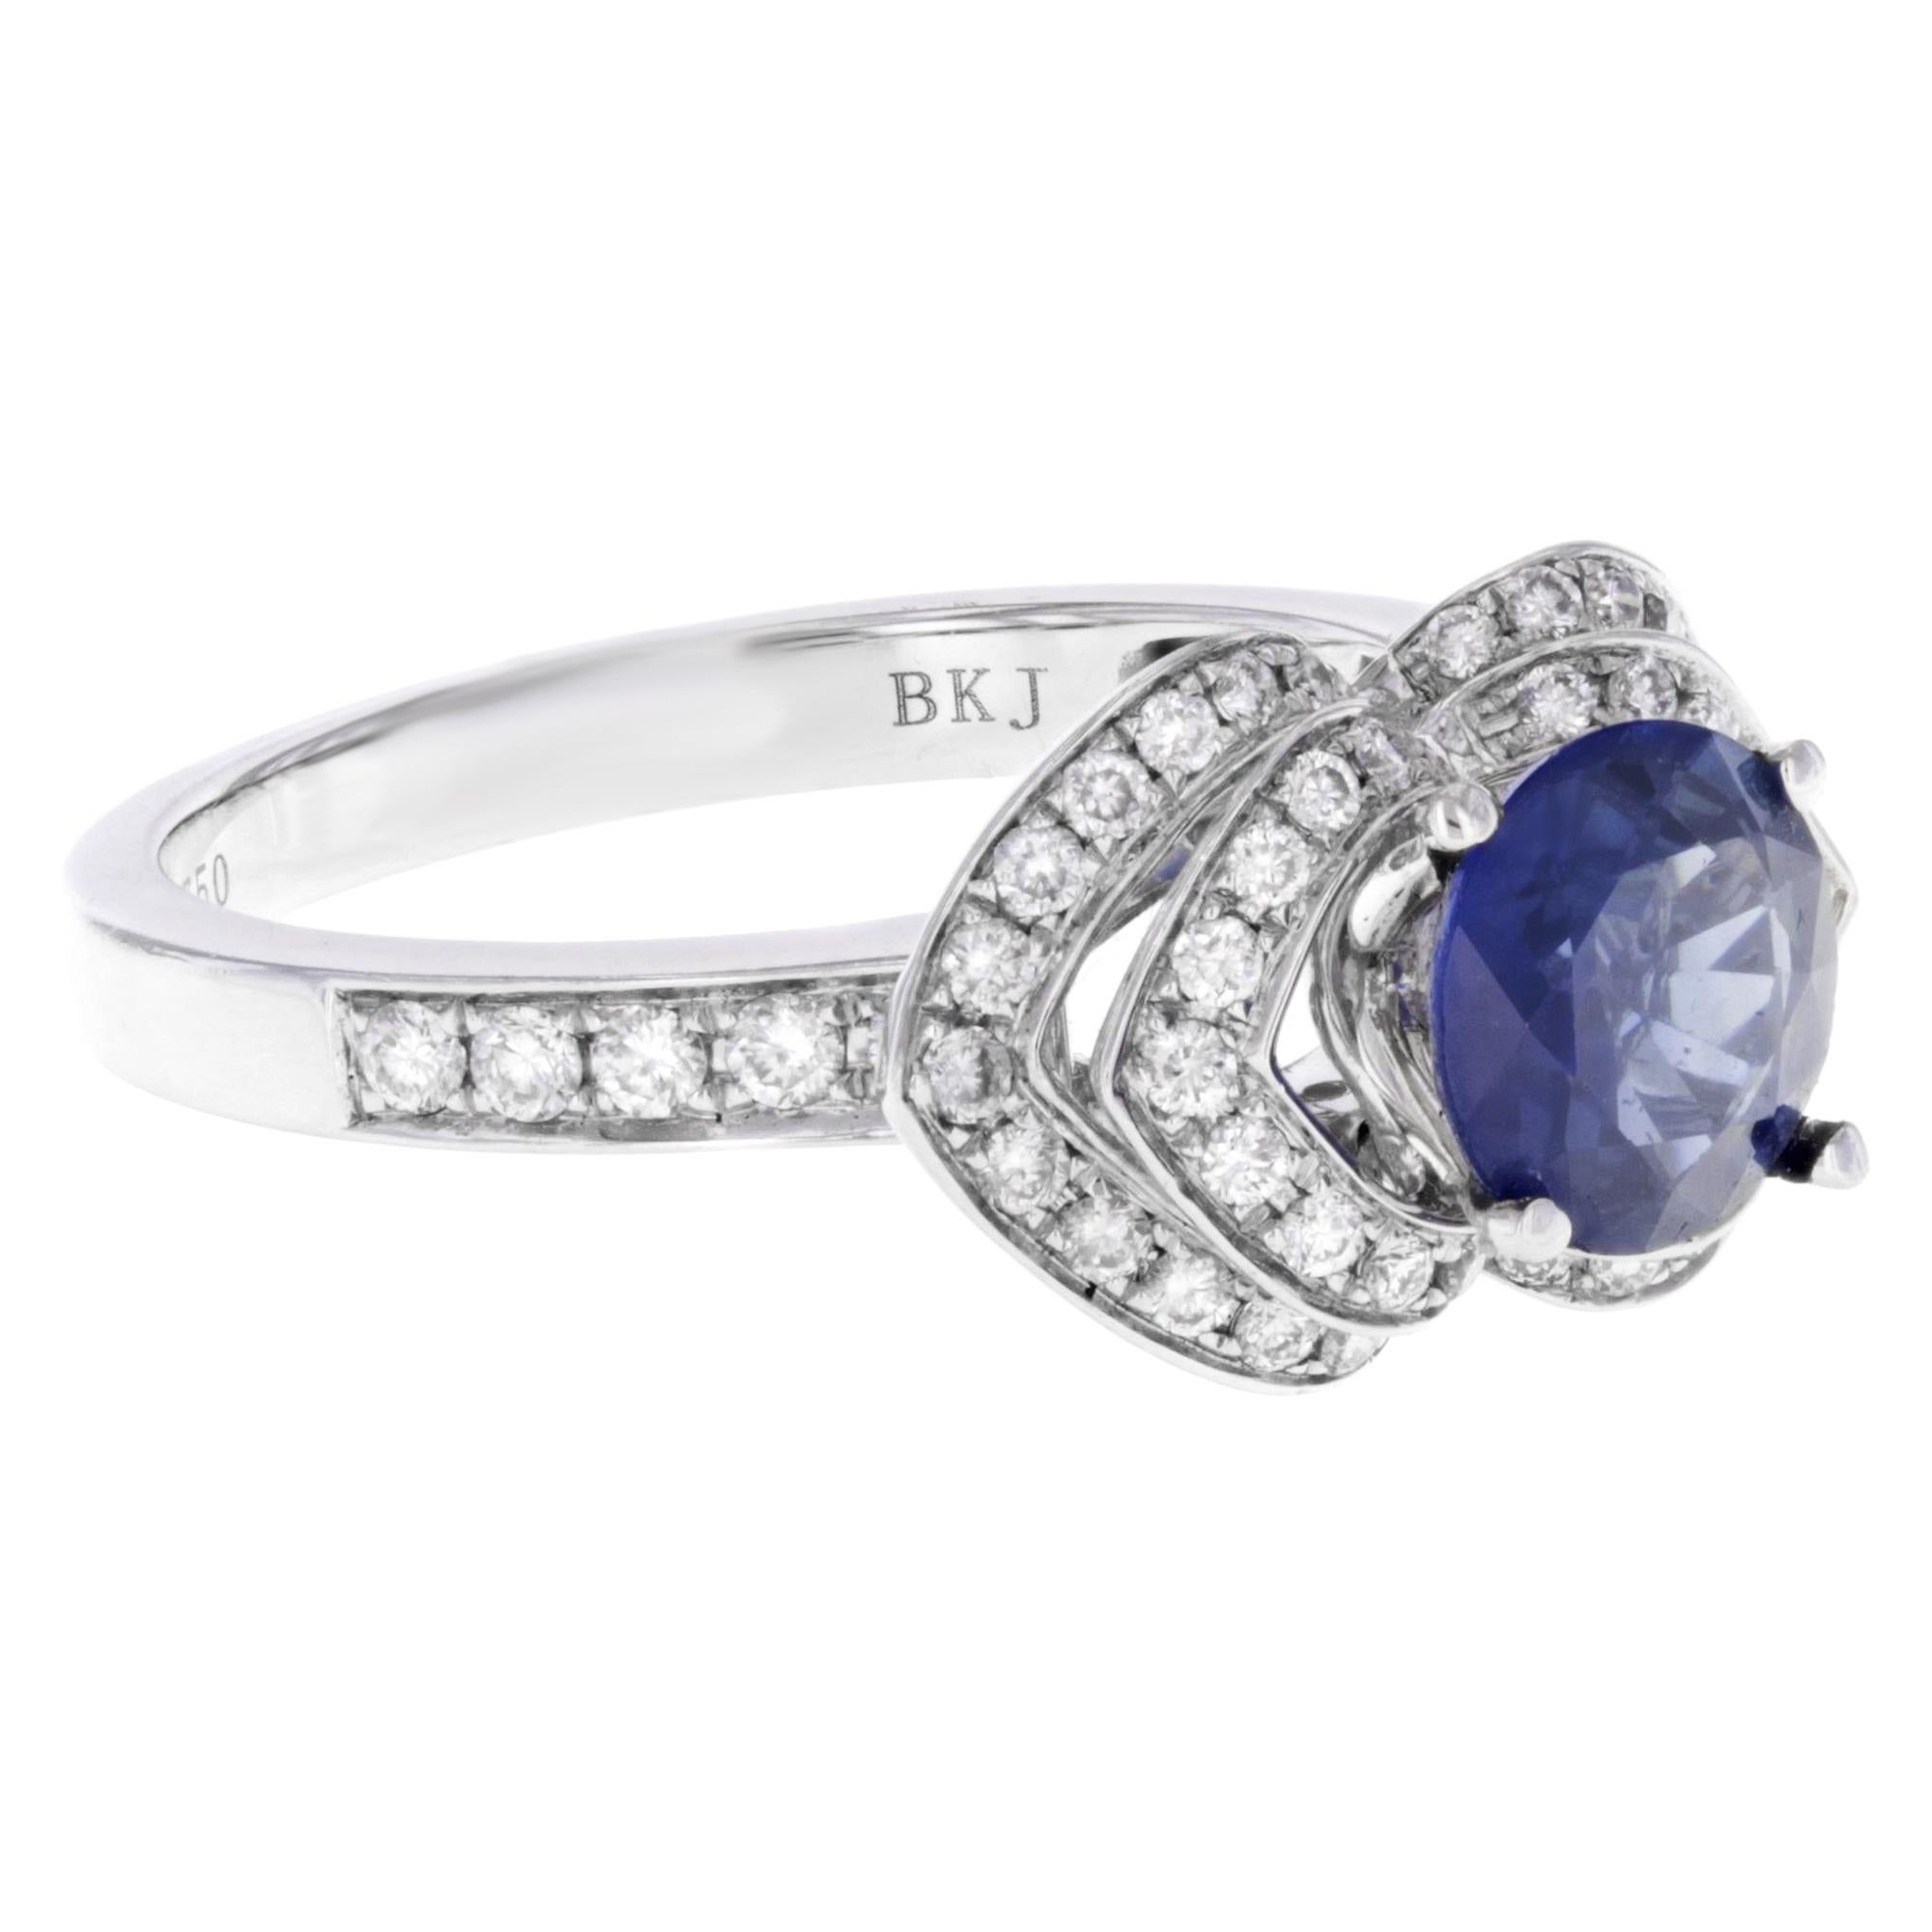 Modern Rachel Koen Round Sapphire Diamond Ring 18K White Gold 1.5 Cttw For Sale